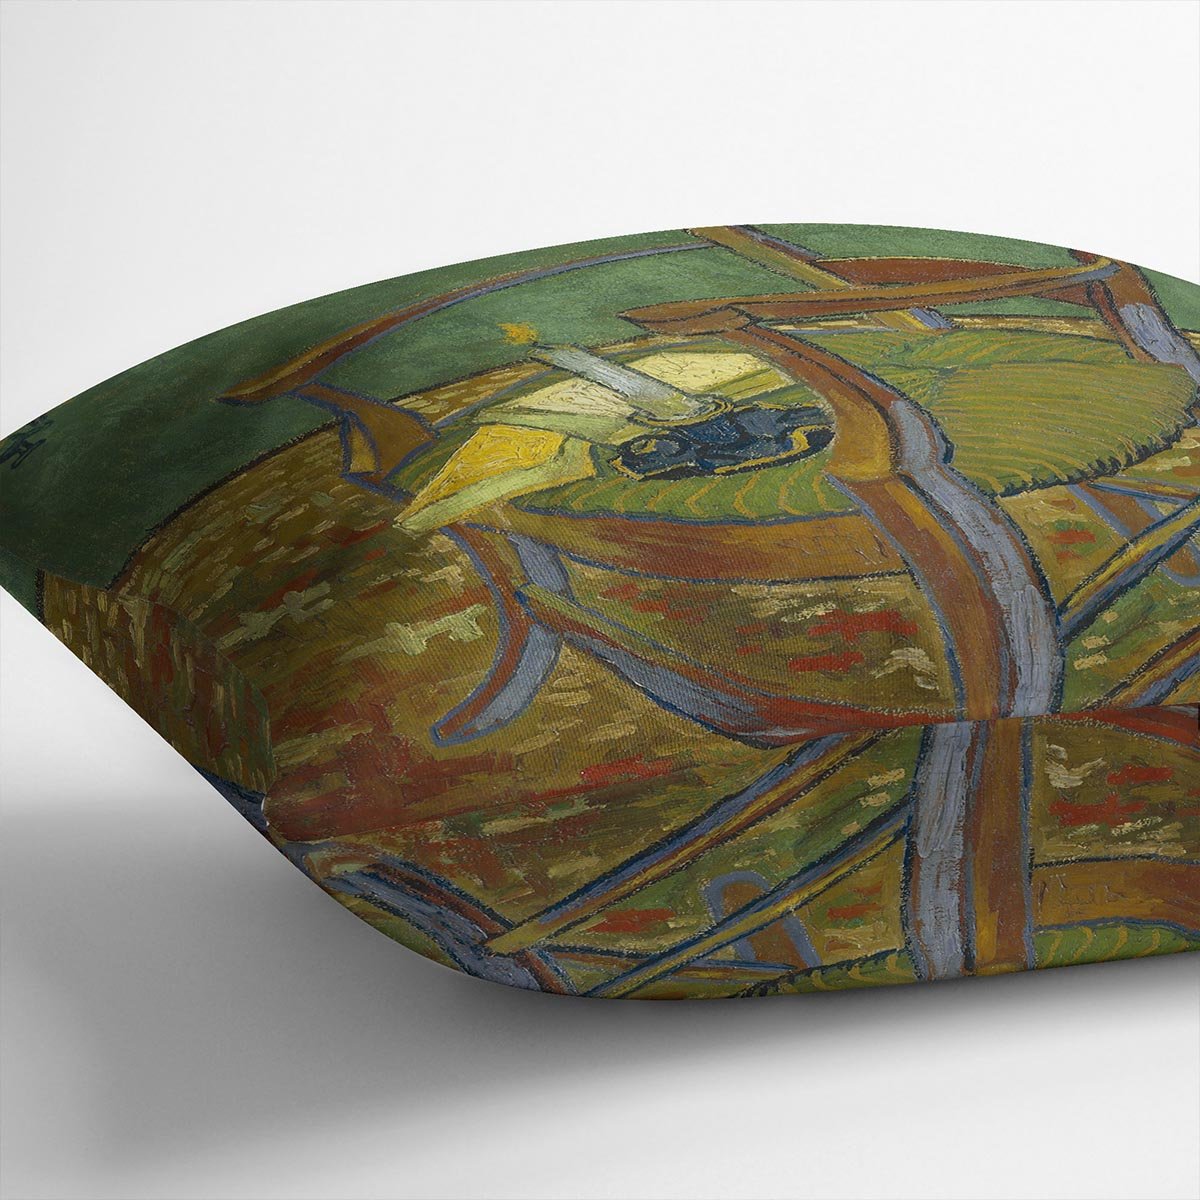 Gauguins chair by Van Gogh Throw Pillow